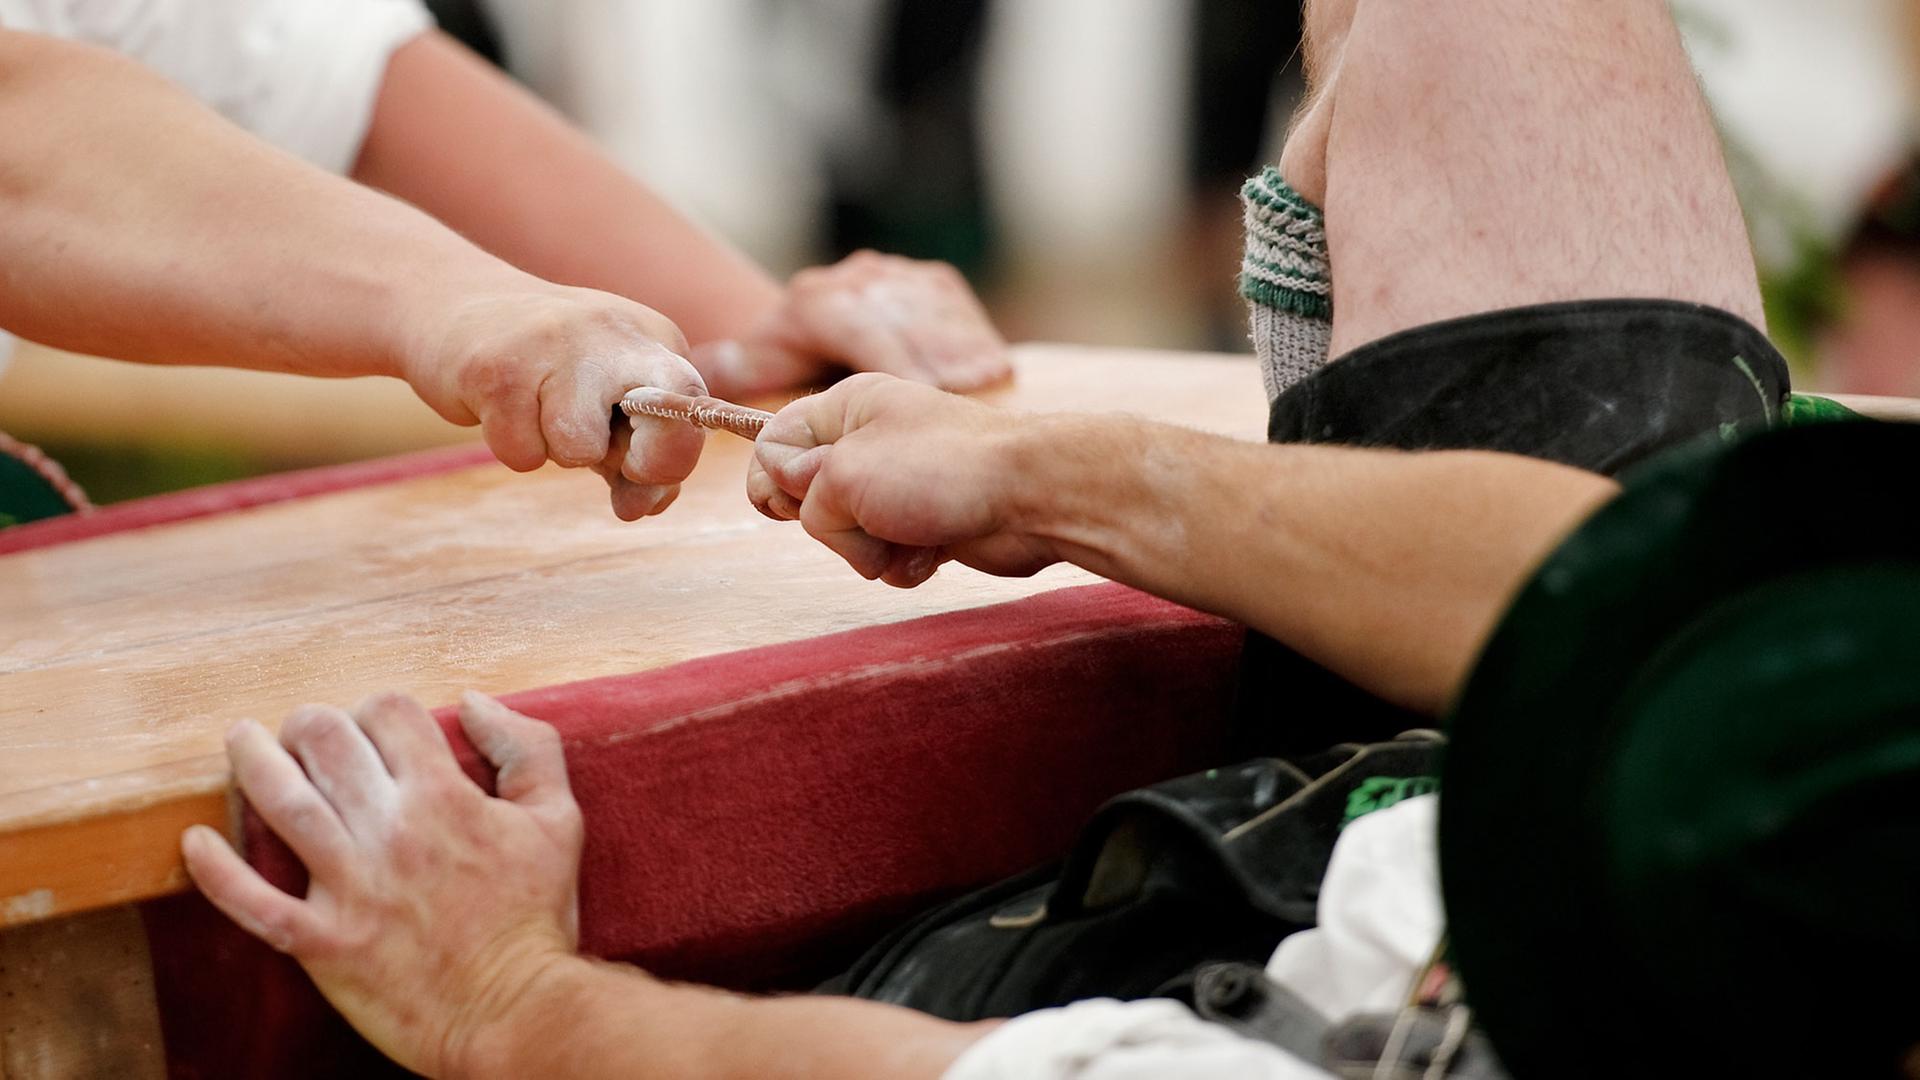 Teilnehmer kämpfen am in Garmisch-Partenkirchen (Oberbayern) um die Deutsche Meisterschaft im Fingerhakeln. Die Gegner sitzen sich bei dem Wettbewerb auf Hockern an einem Tisch gegenüber und versuchen, den Gegner am Finger zu sich herüberzuziehen. Hinter jedem Hakler sitzt ein Auffänger.